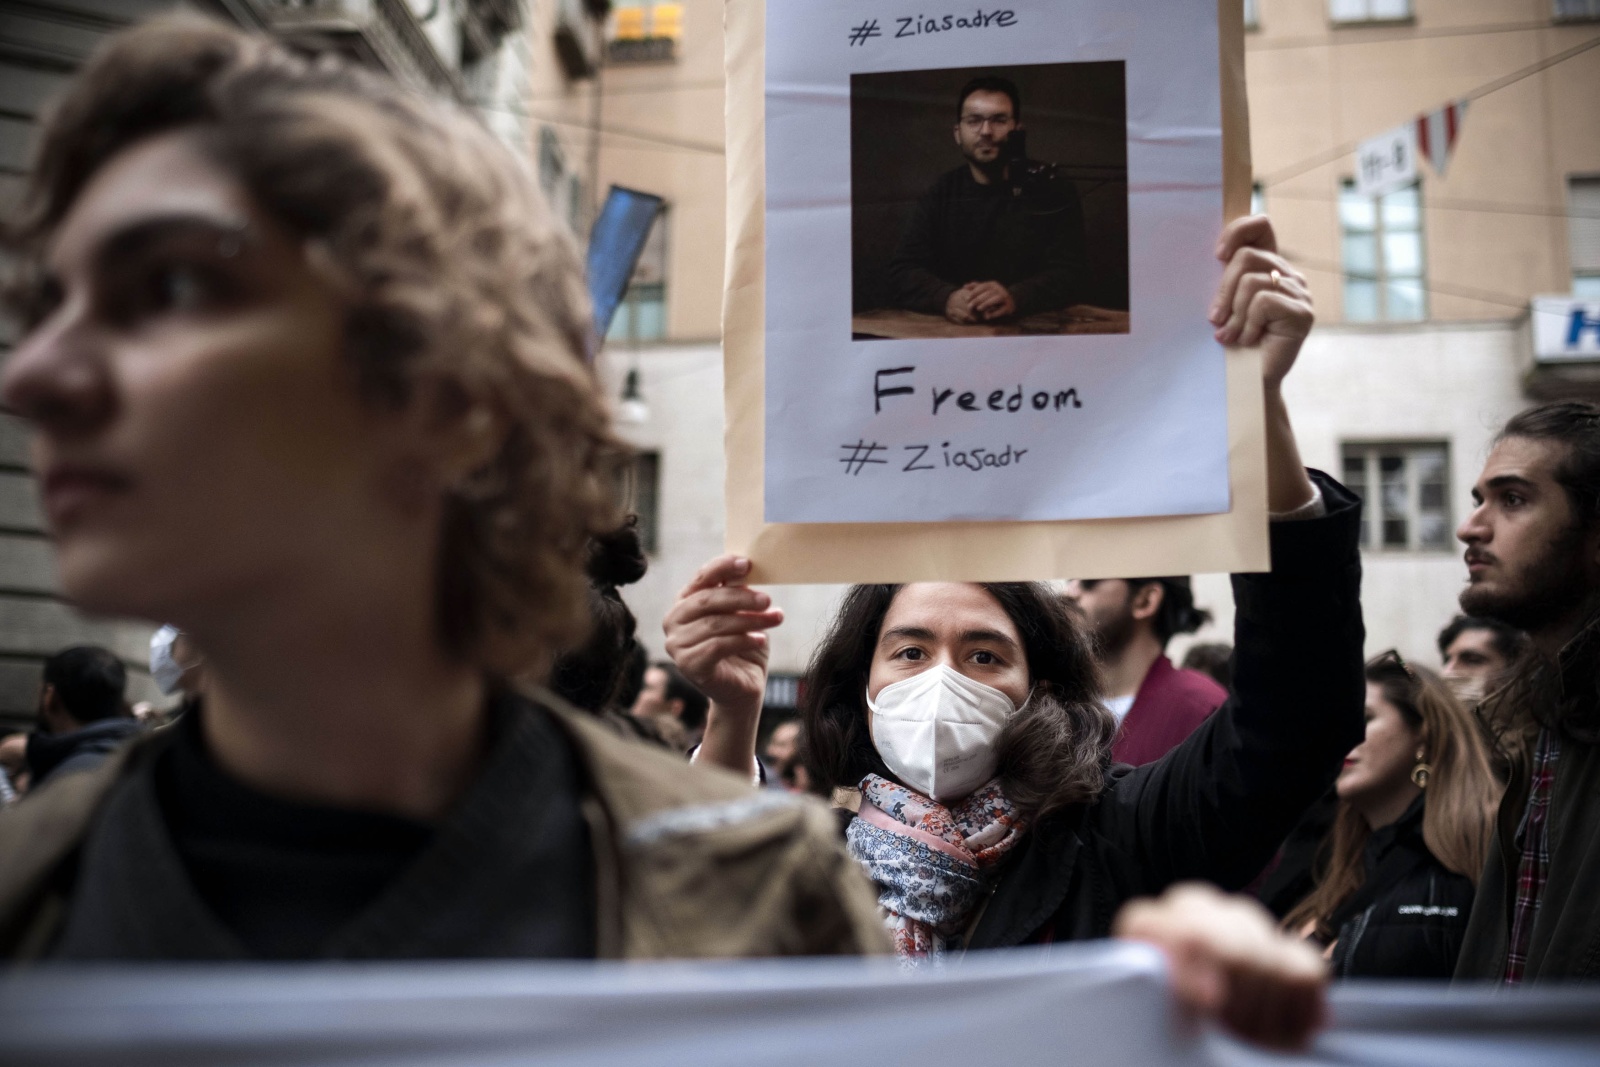  La comunità iraniana è scesa per le strade di Torino per chiedere giustizia per le vittime della repressione e l'immediata liberazione di tutte le persone arrestate dopo la morte Mahsa Amini di 22 anni.
